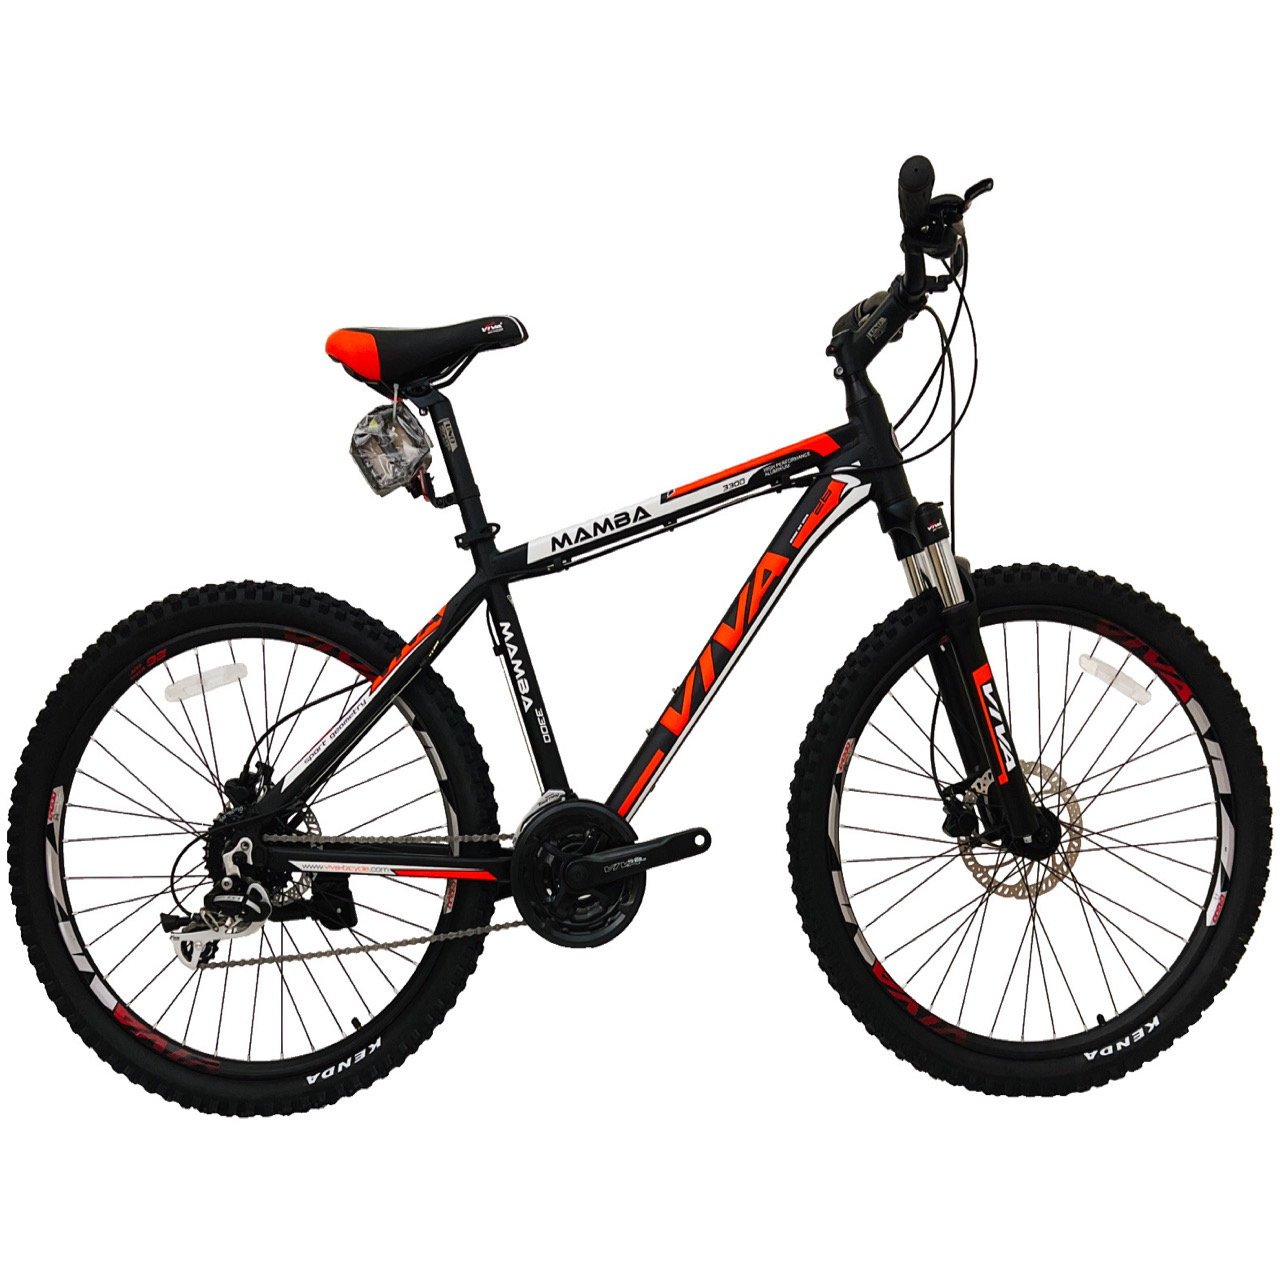 نکته خرید - قیمت روز دوچرخه کوهستان ویوا مدل MAMBA کد هیدرولیک سایز 26 خرید